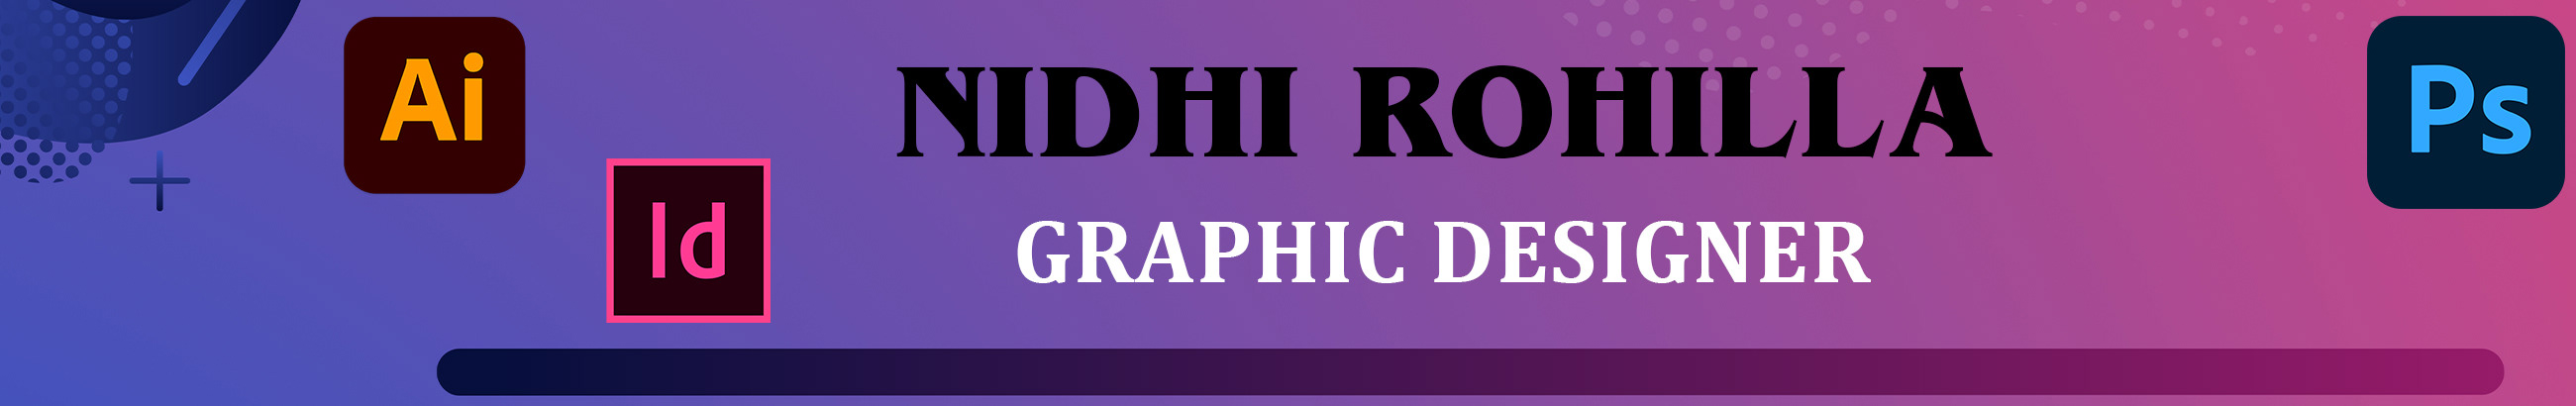 Nidhi Rohilla's profile banner